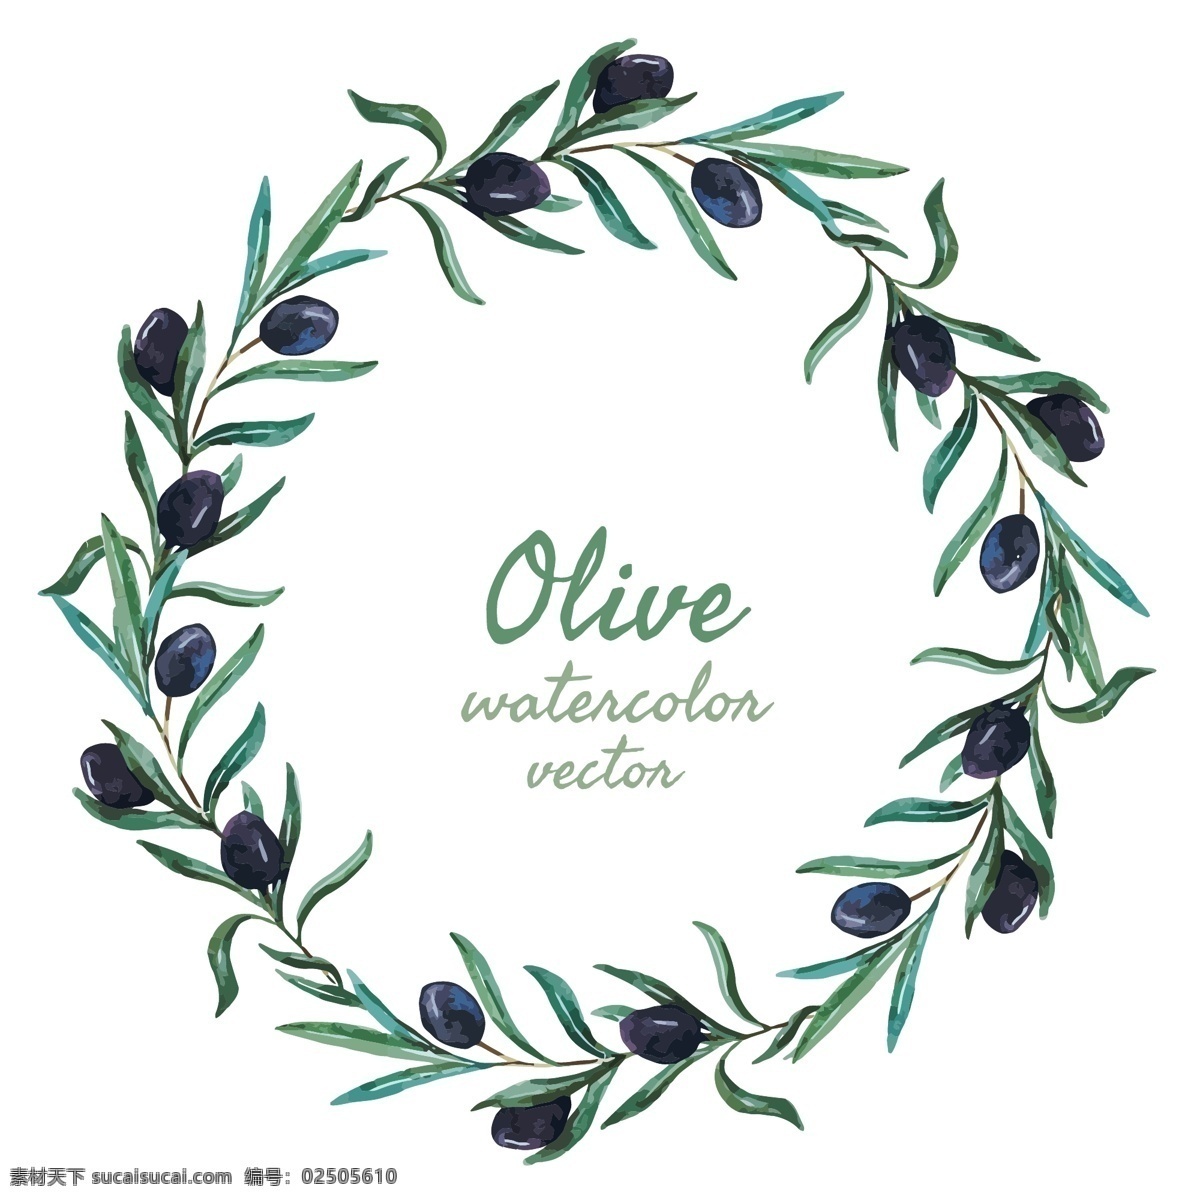 时尚 水彩 绘 橄榄枝 花边 边框 橄榄 花枝 手绘 水彩绘 叶子 植物